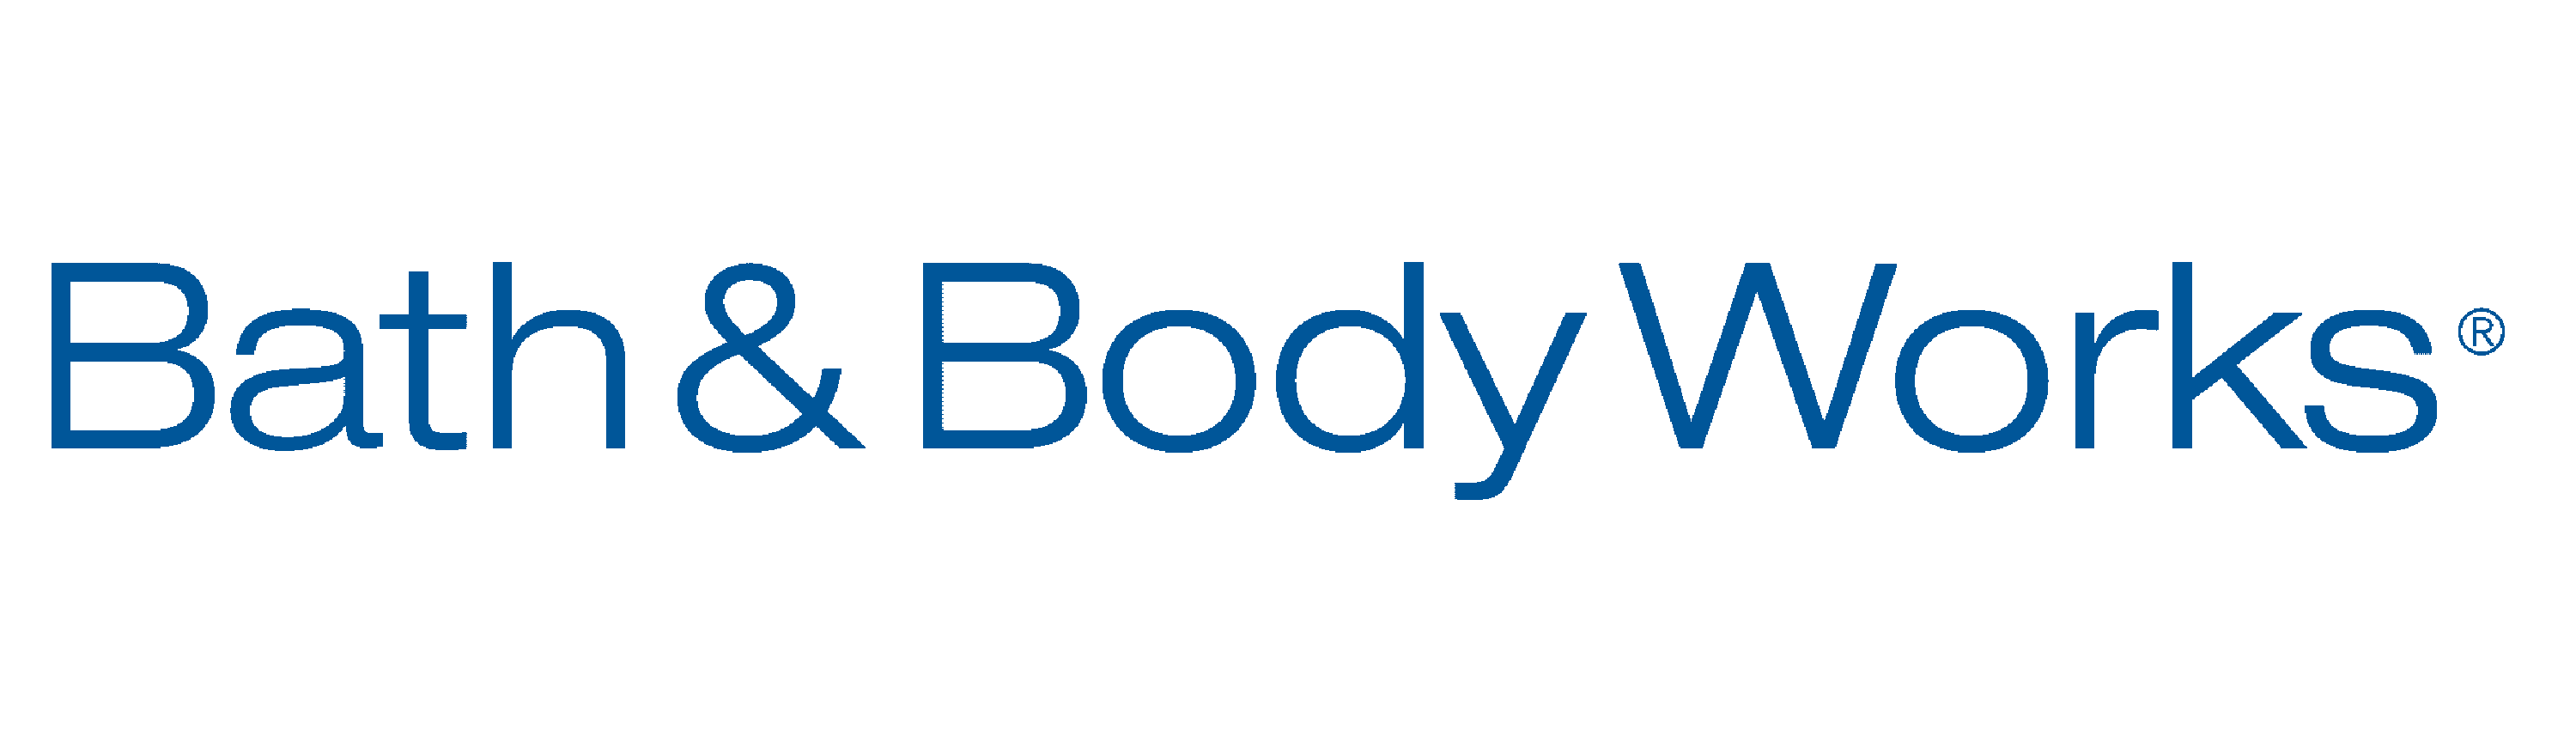 logos clientes_bath and body